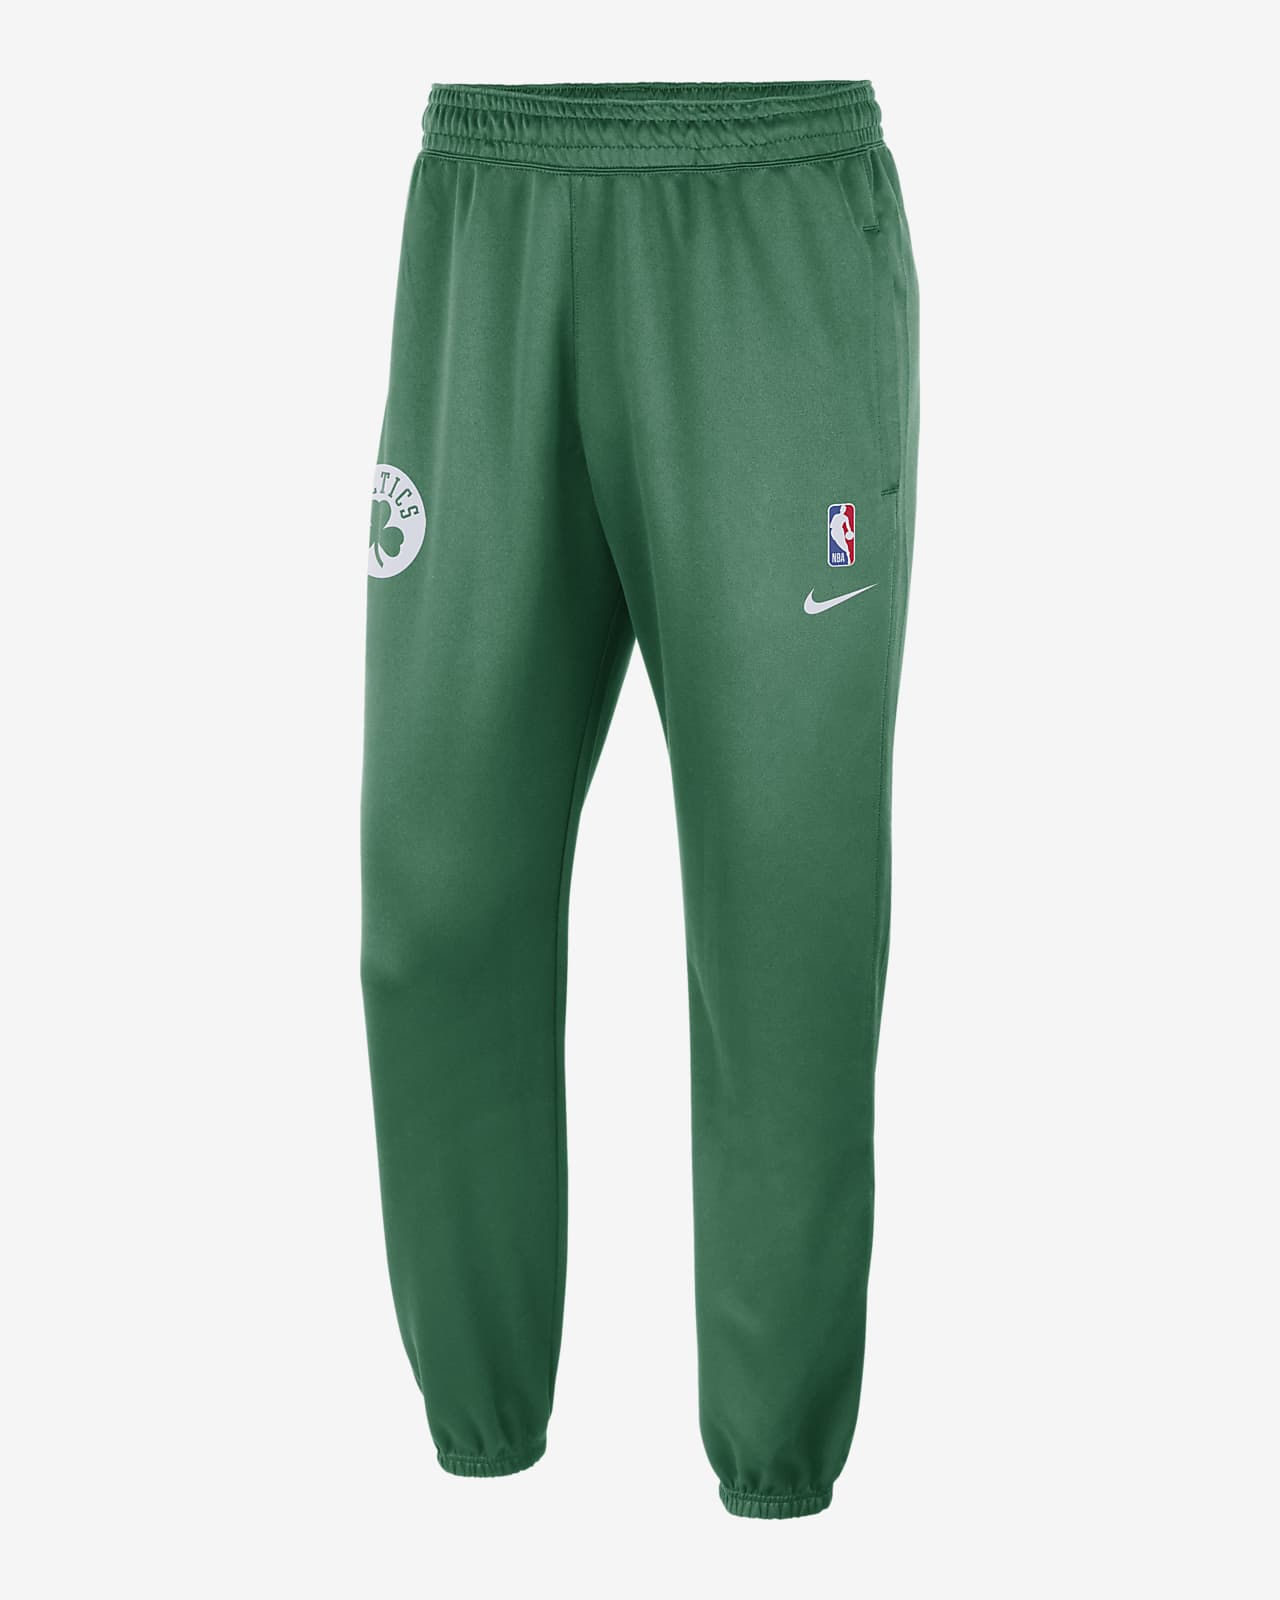 Boston Celtics Courtside Men's Nike Dri-FIT NBA Graphic Shorts.